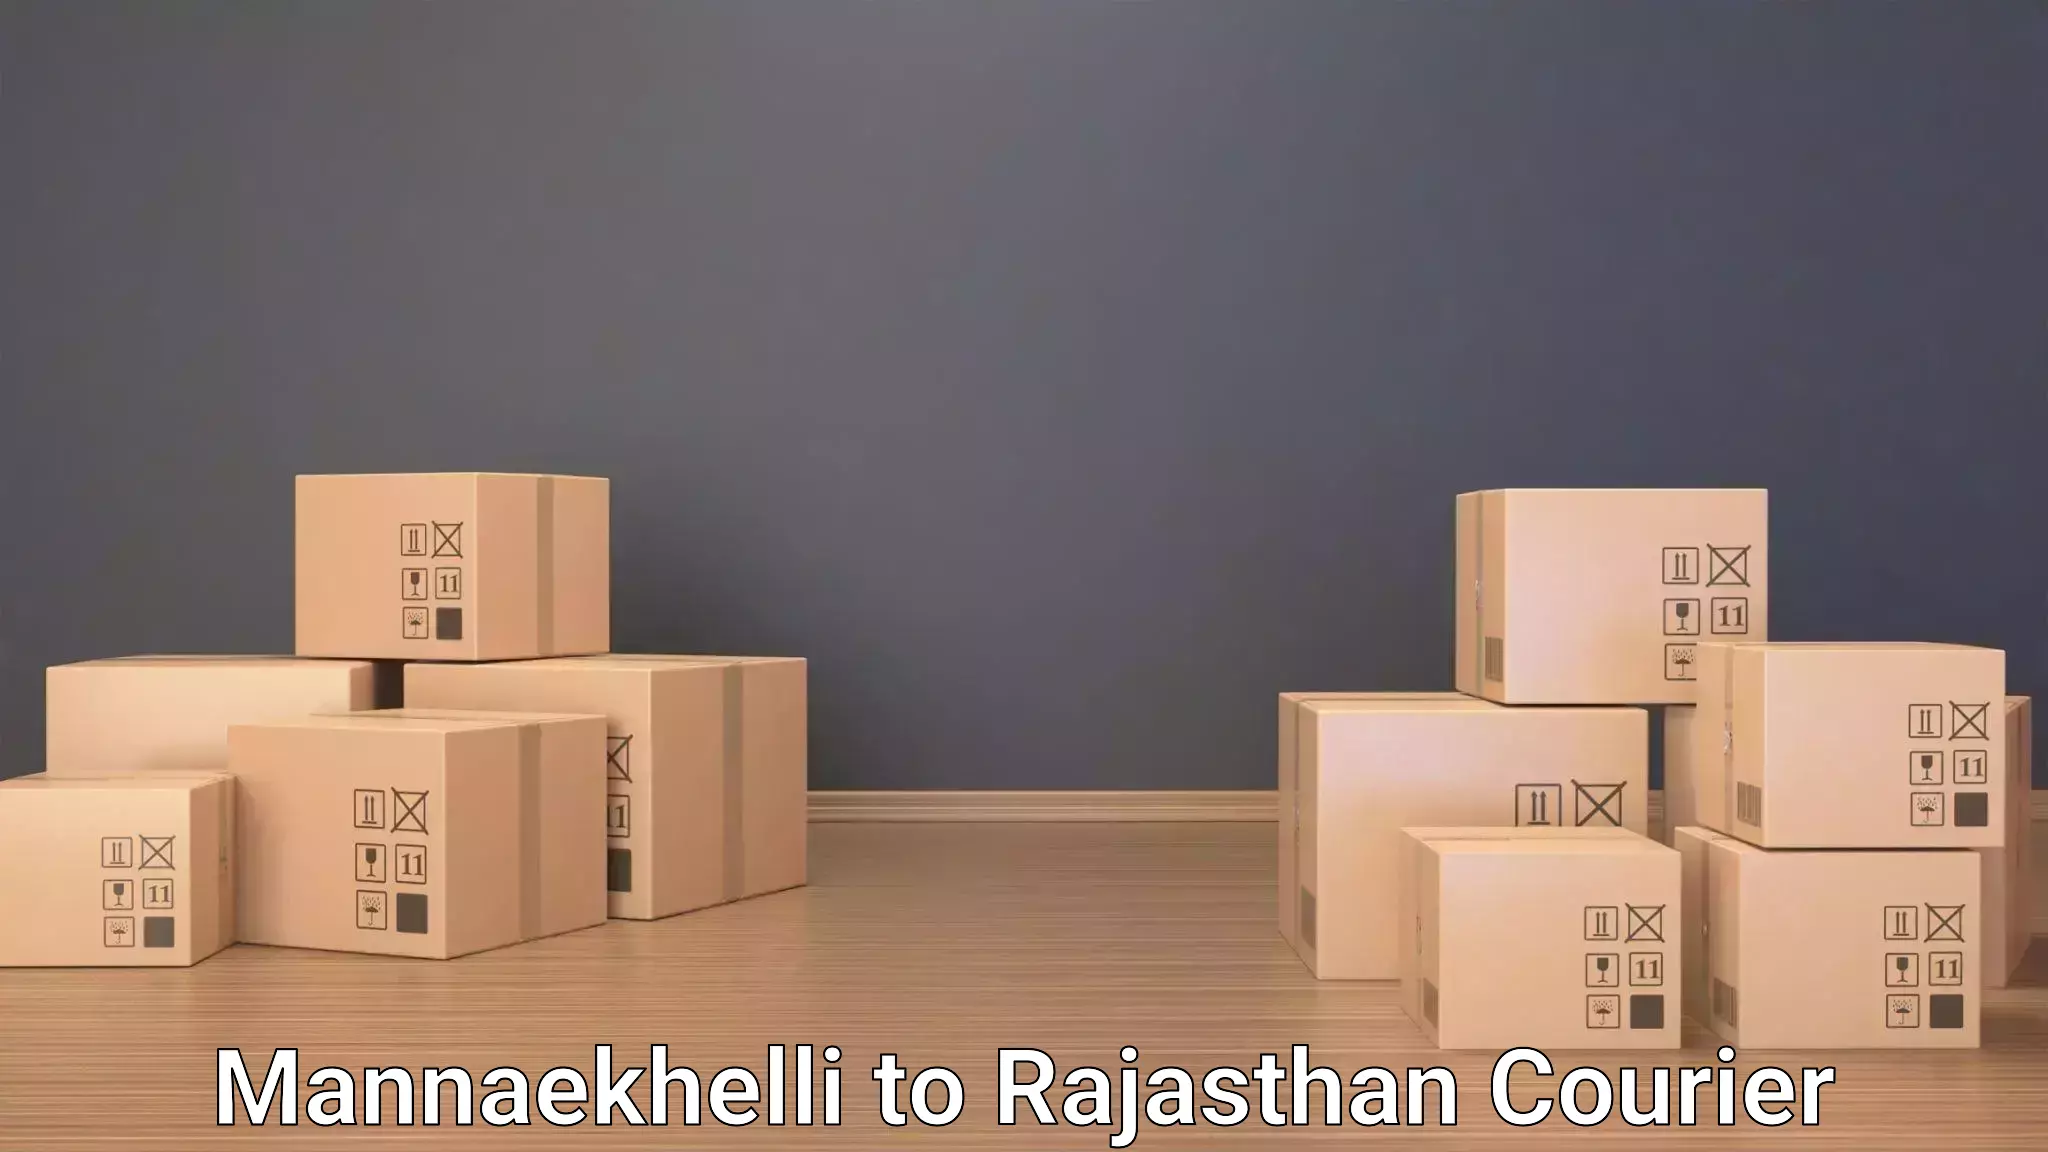 Luggage delivery system Mannaekhelli to Banasthali Vidyapith